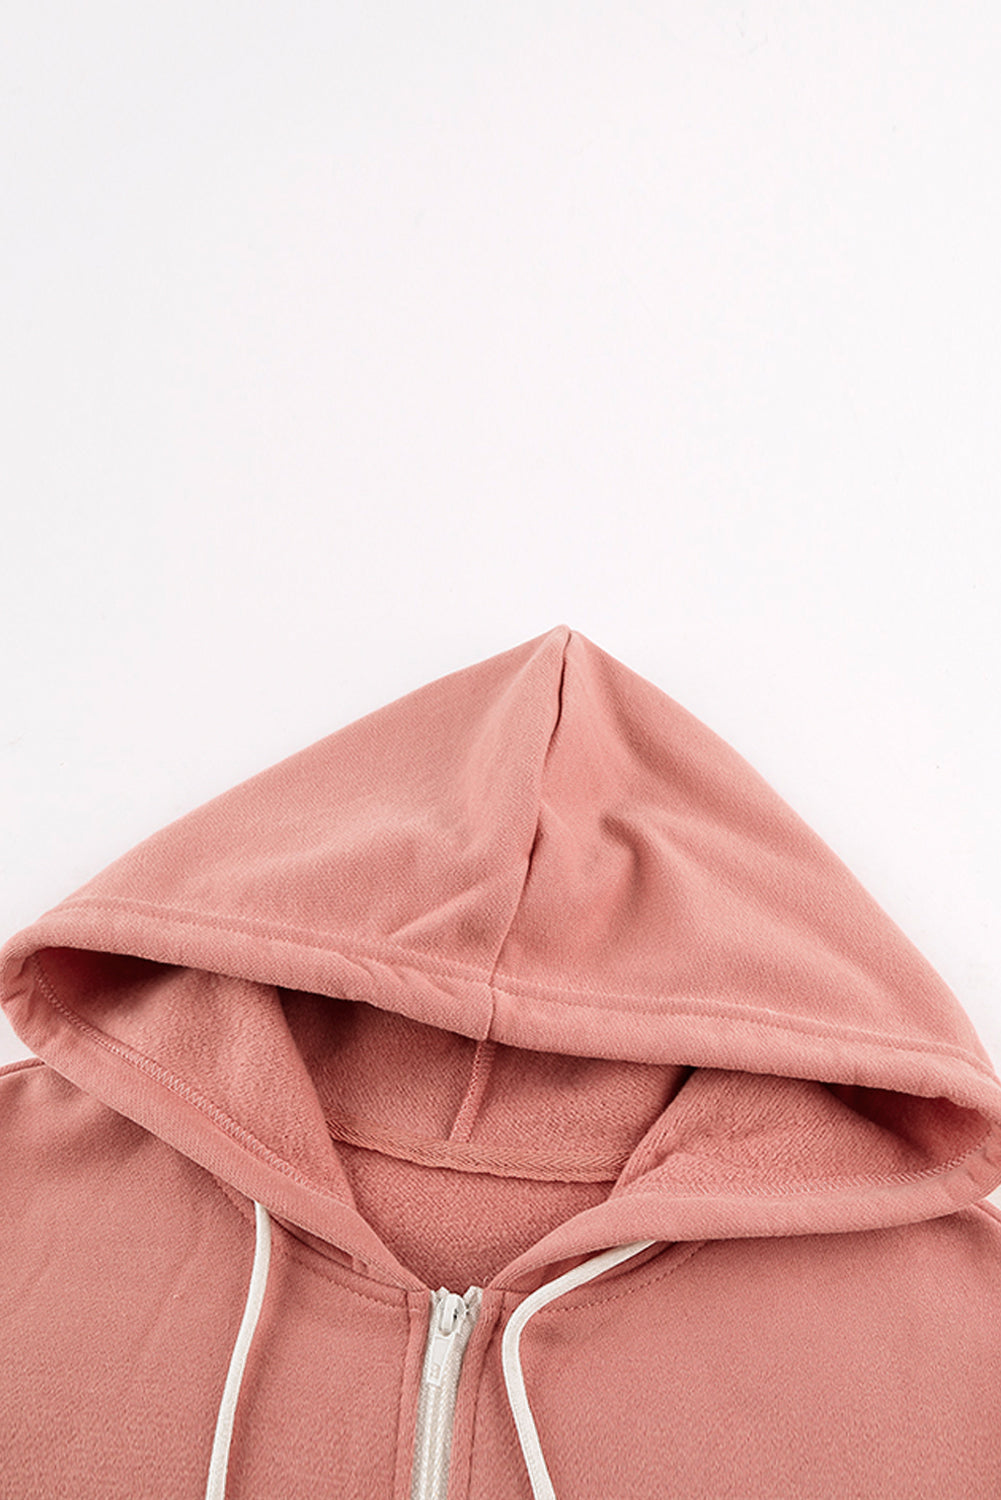 Pink Zip-up Hoodie Jacket